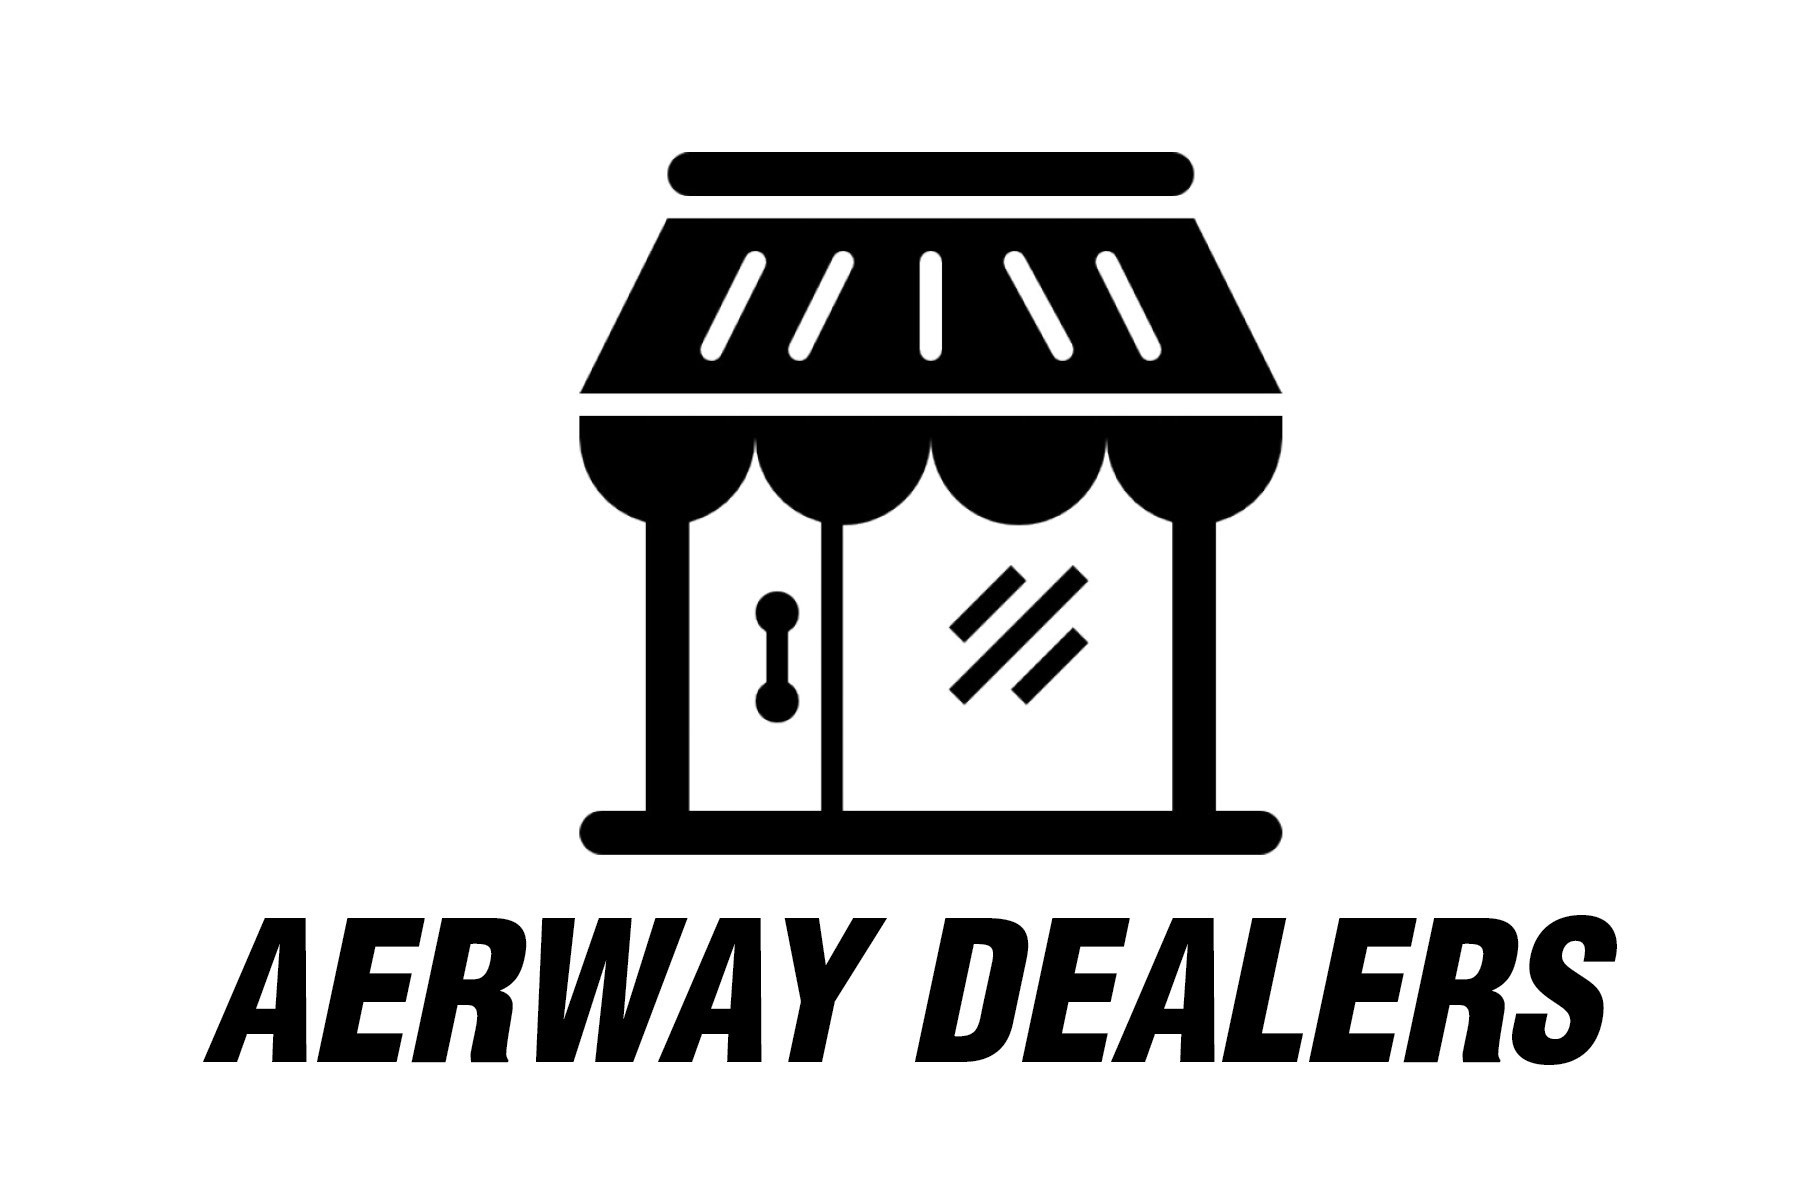 Aerway Dealers